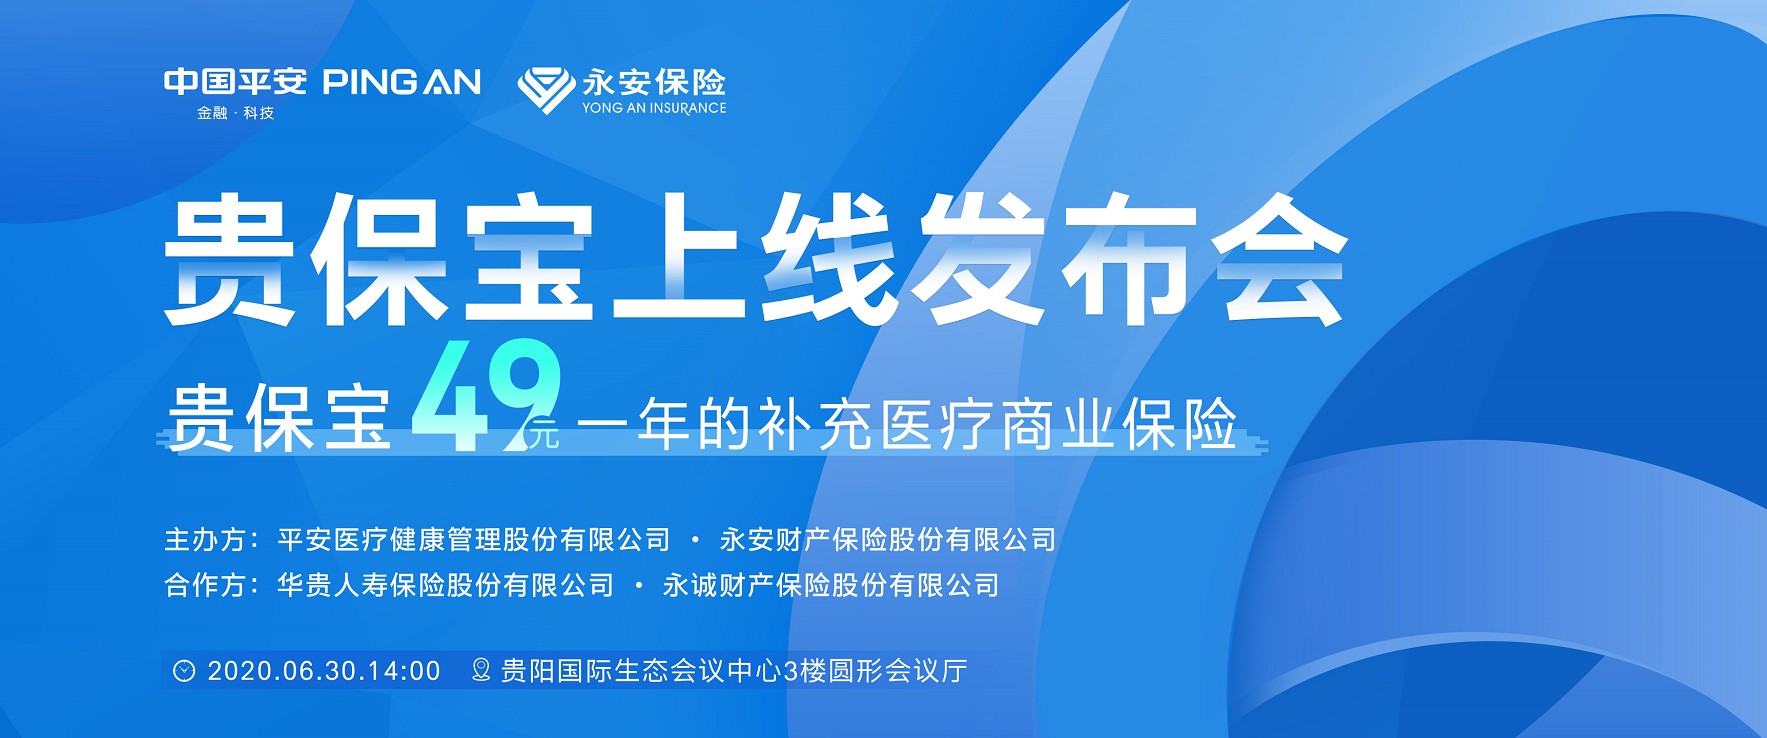 49元保一年！贵阳市实用型补充医疗商业保险"贵保宝"正式发布